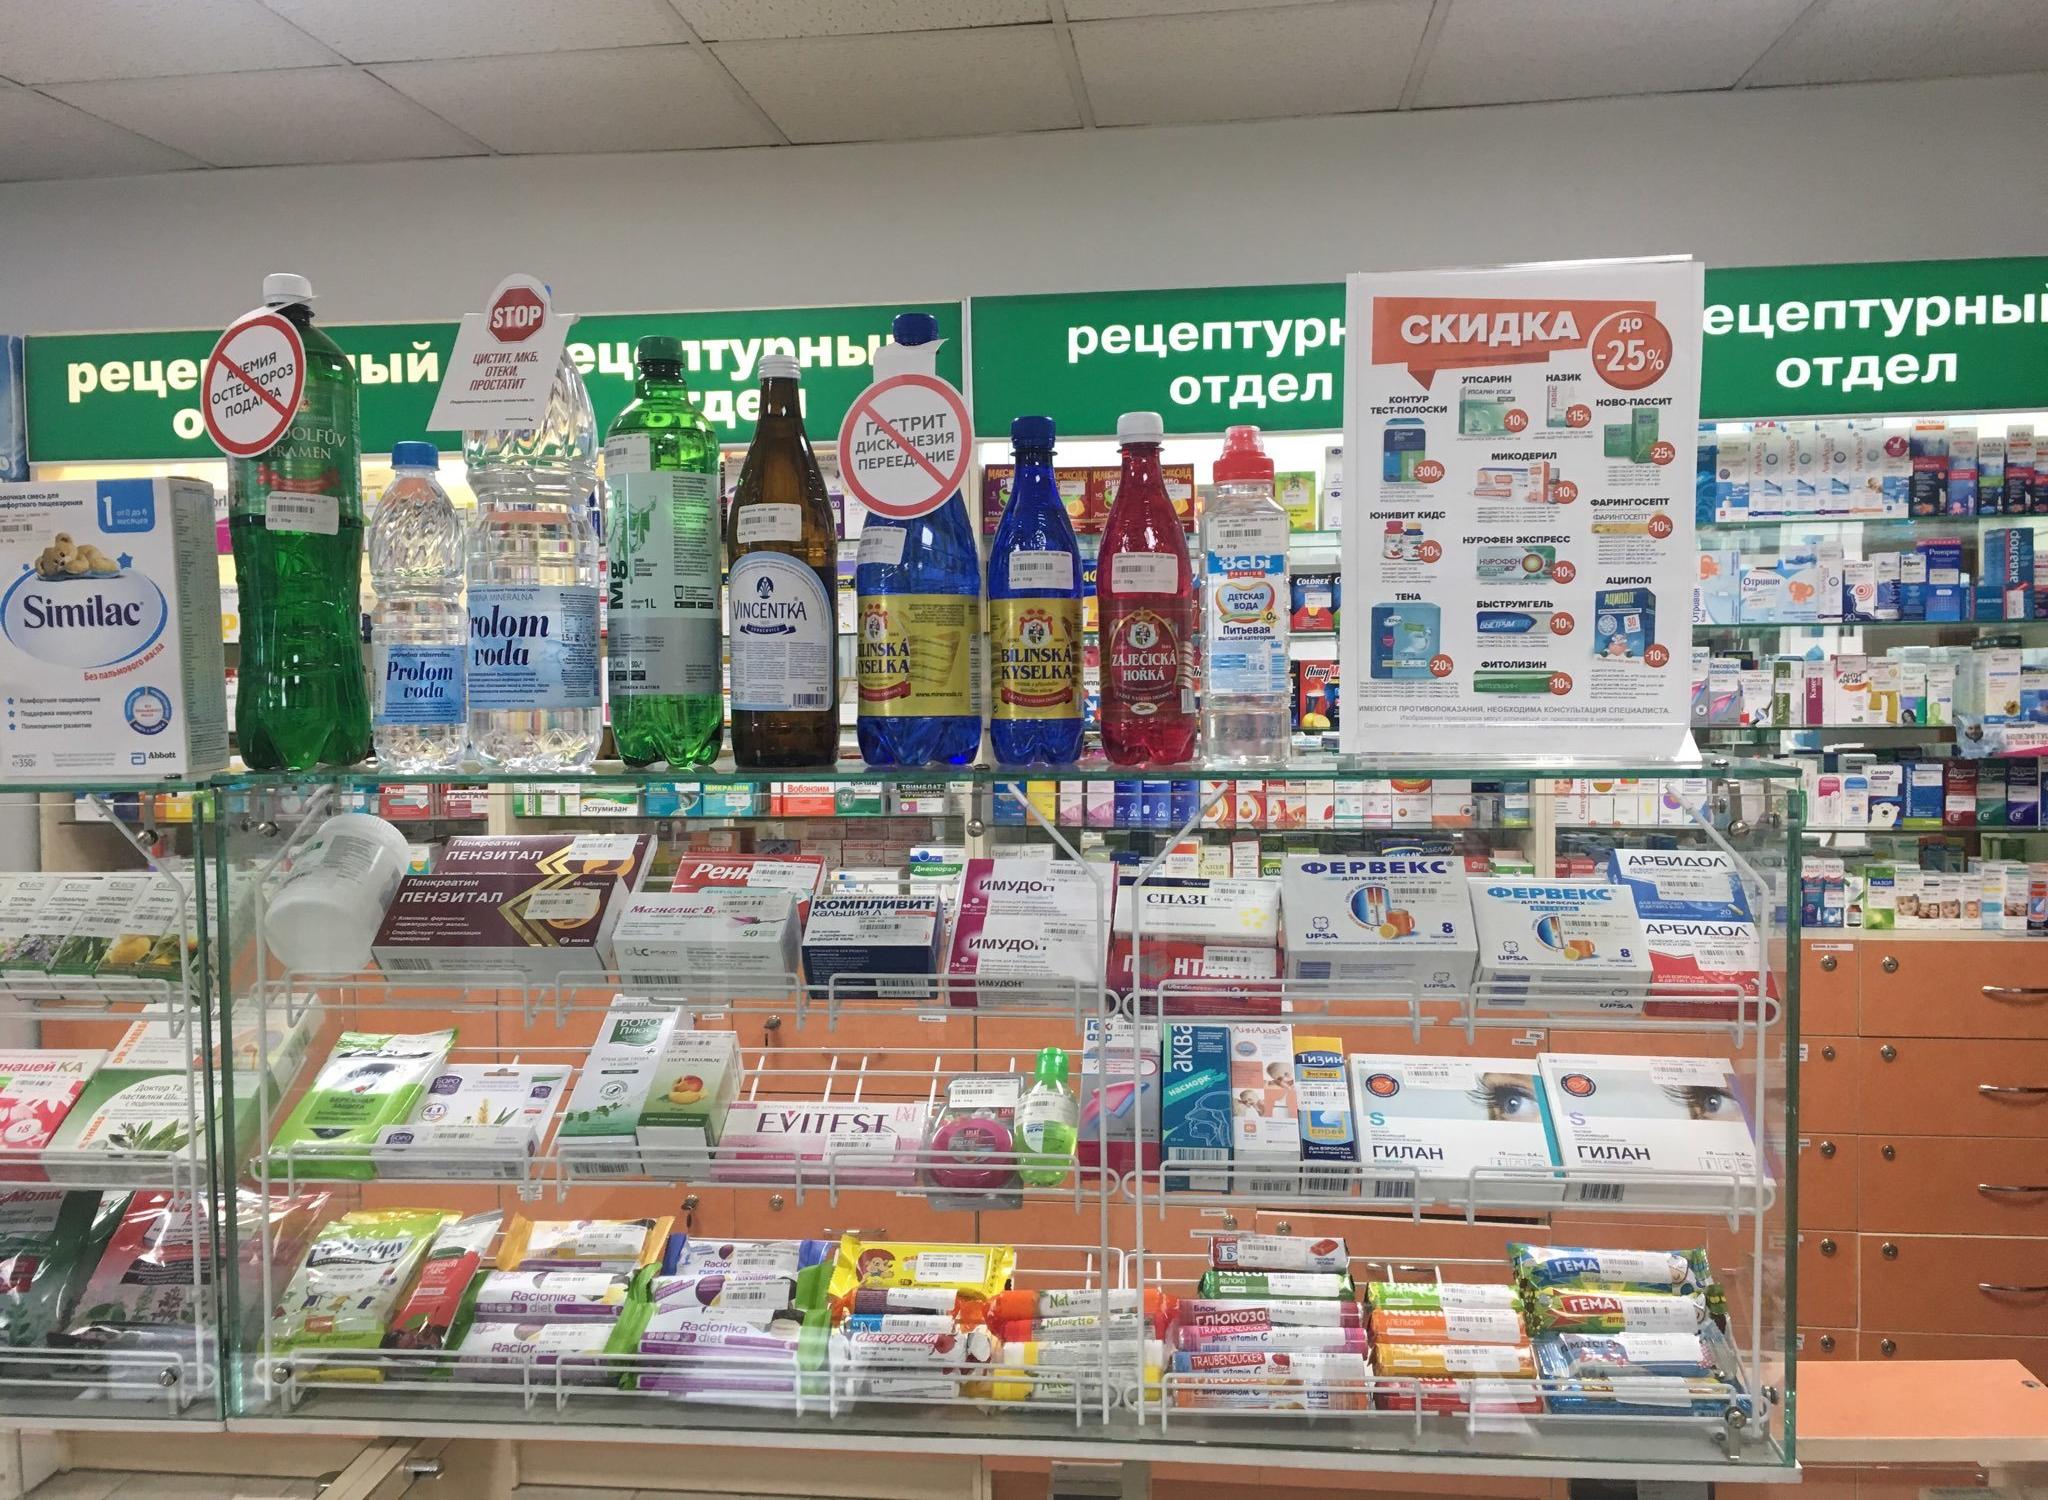 Волжская аптека сайт. Аптека эконом Новосибирск. Аптека эконом Чита. Аптека эконом мелодия здоровья.